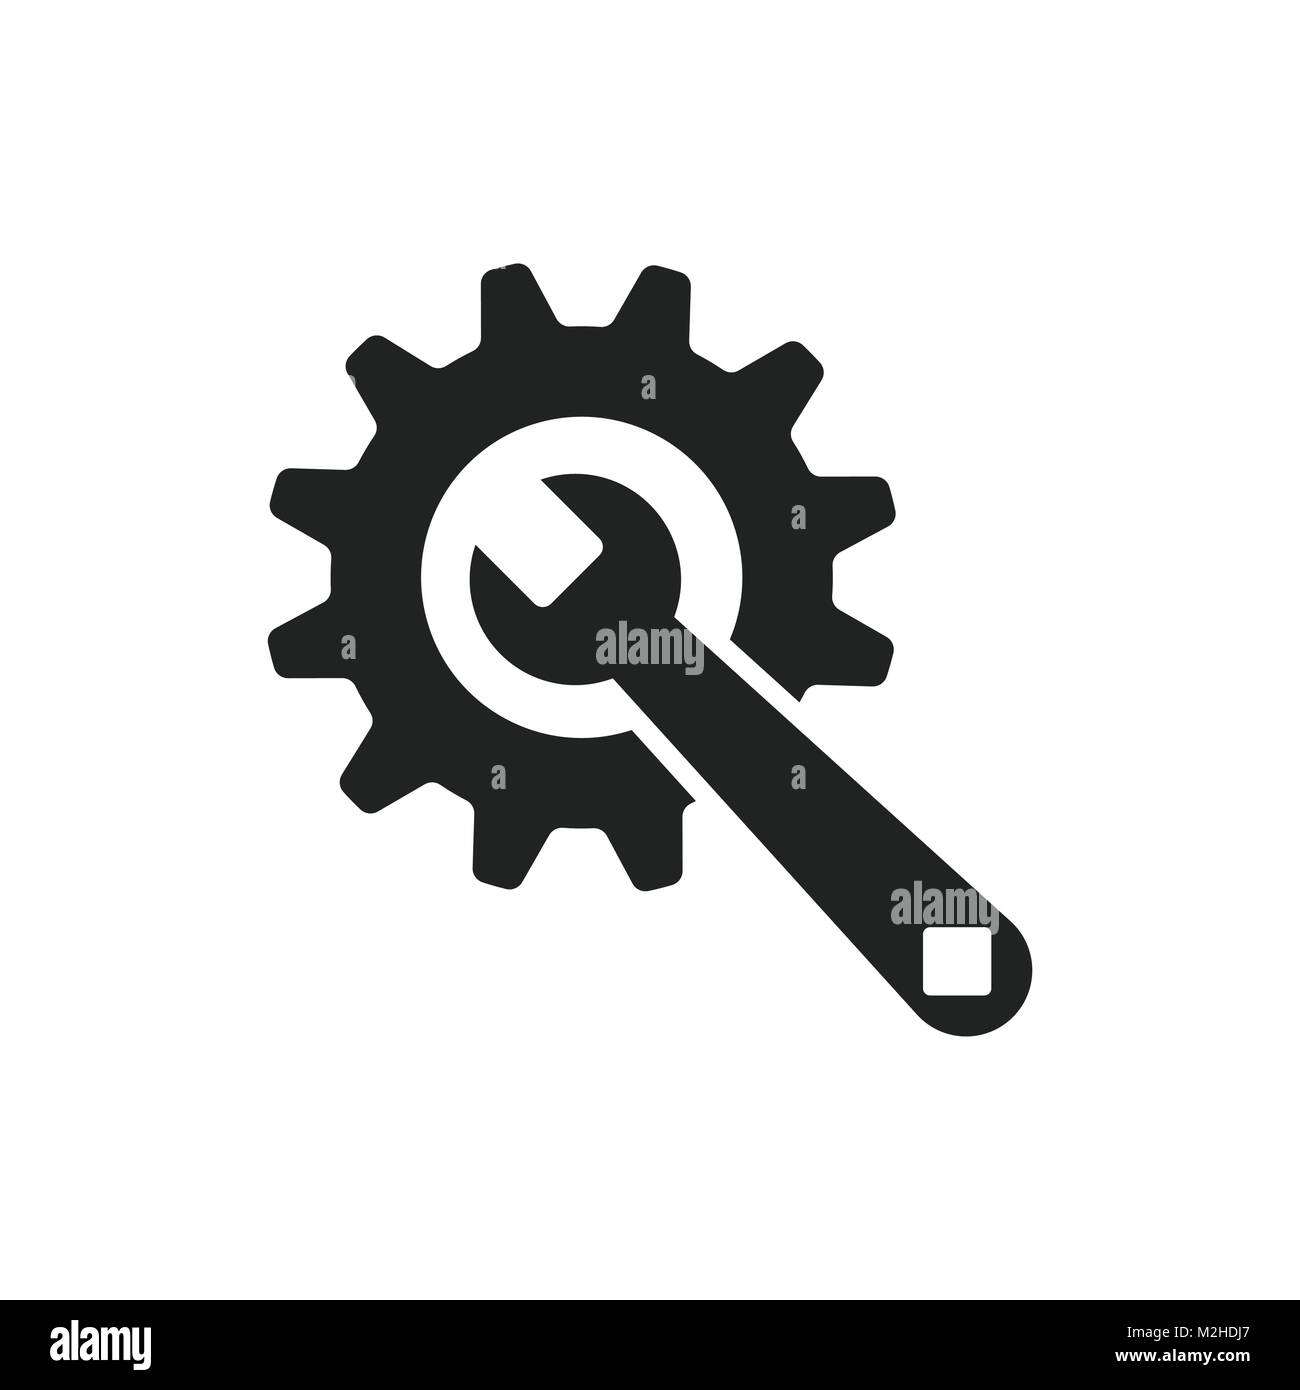 Service Werkzeuge flach Vektor icon. Zahnrad mit Schraubenschlüsselsymbol  logo Illustration Stock-Vektorgrafik - Alamy